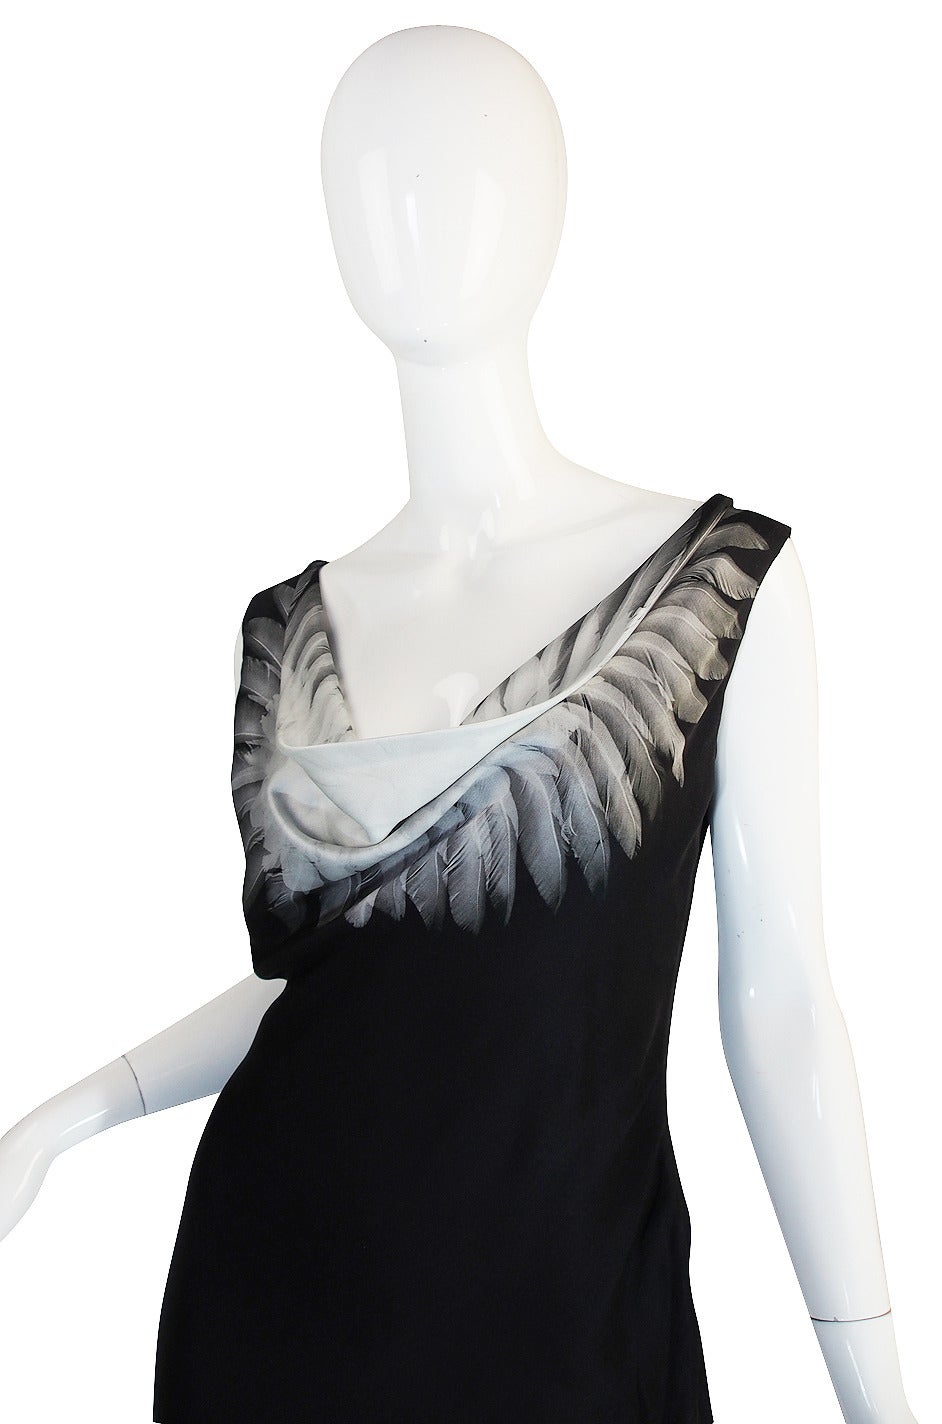 Women's S/S 2009 Alexander McQueen Feather Print Silk Dress